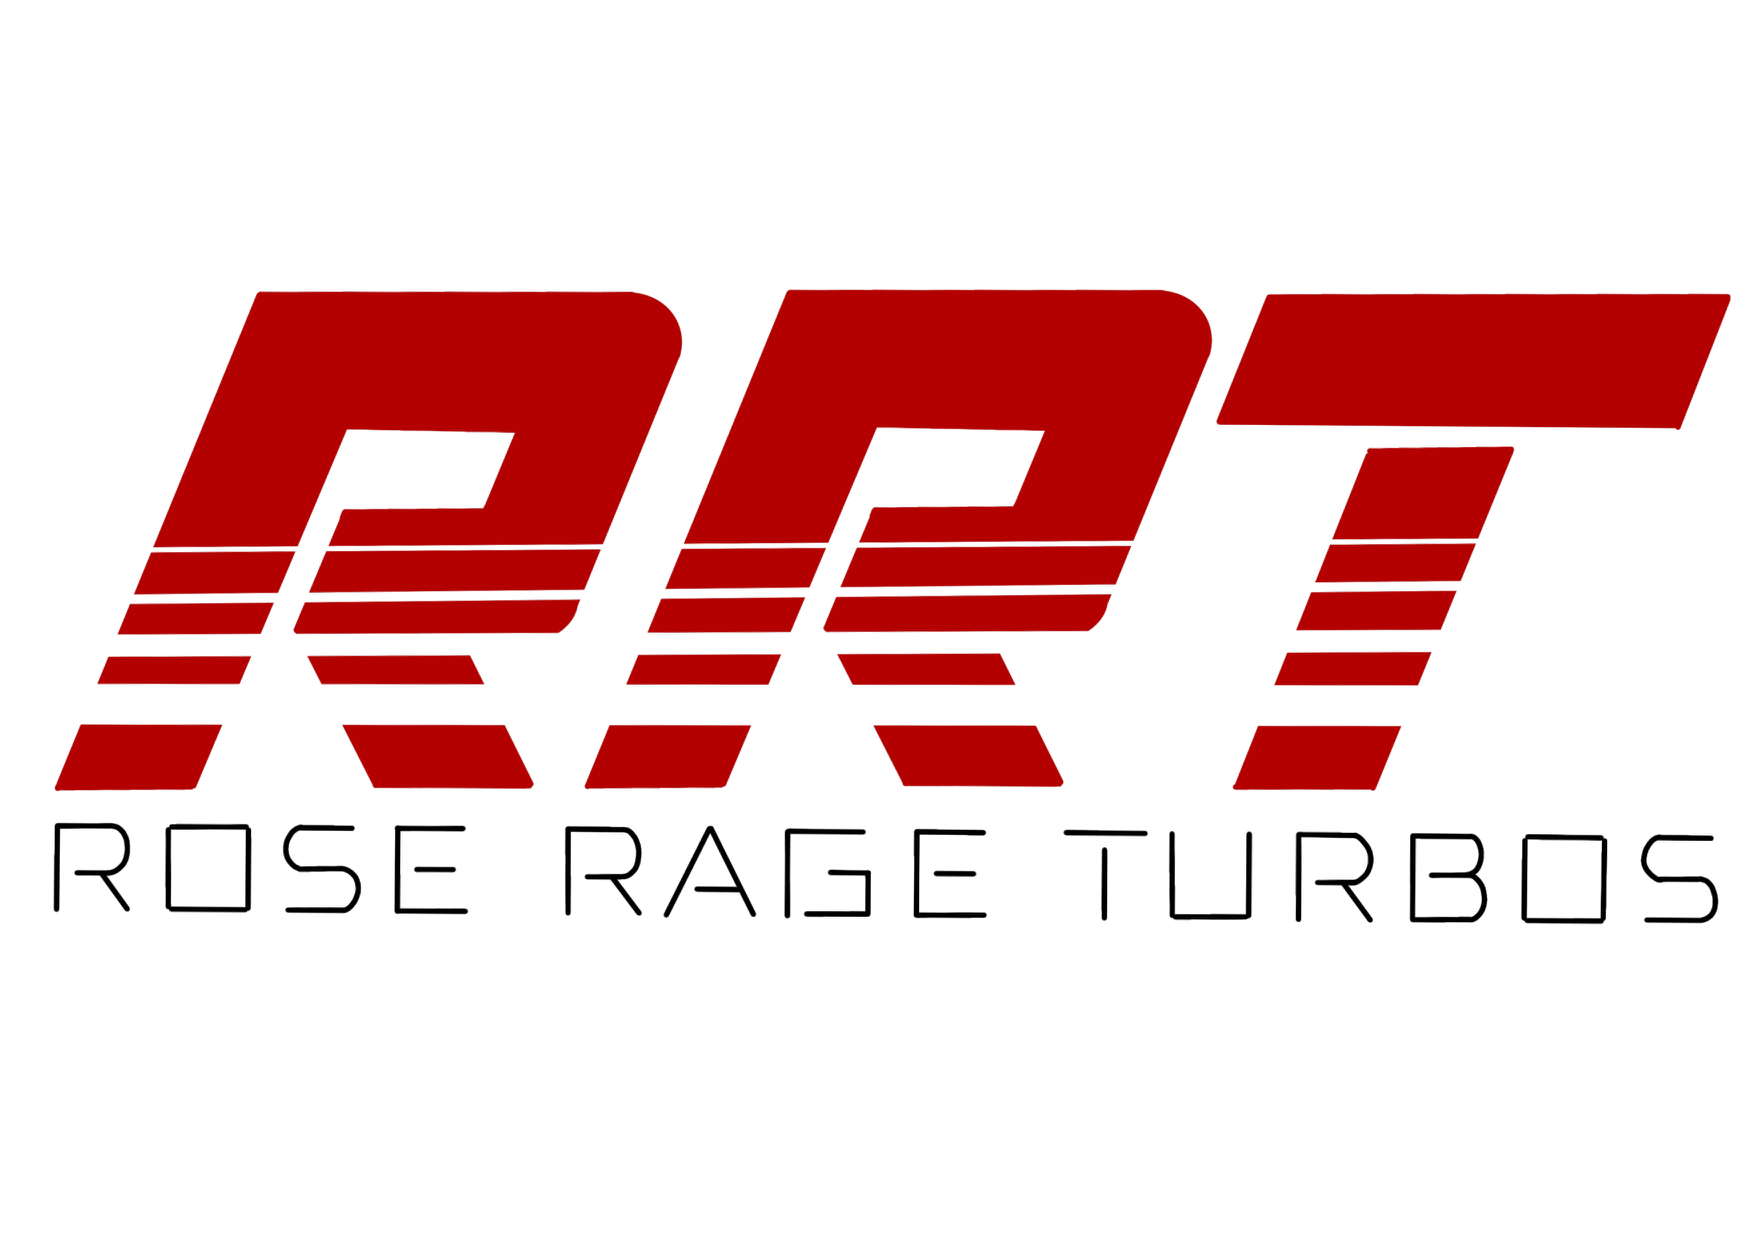 Rose Rage Turbos